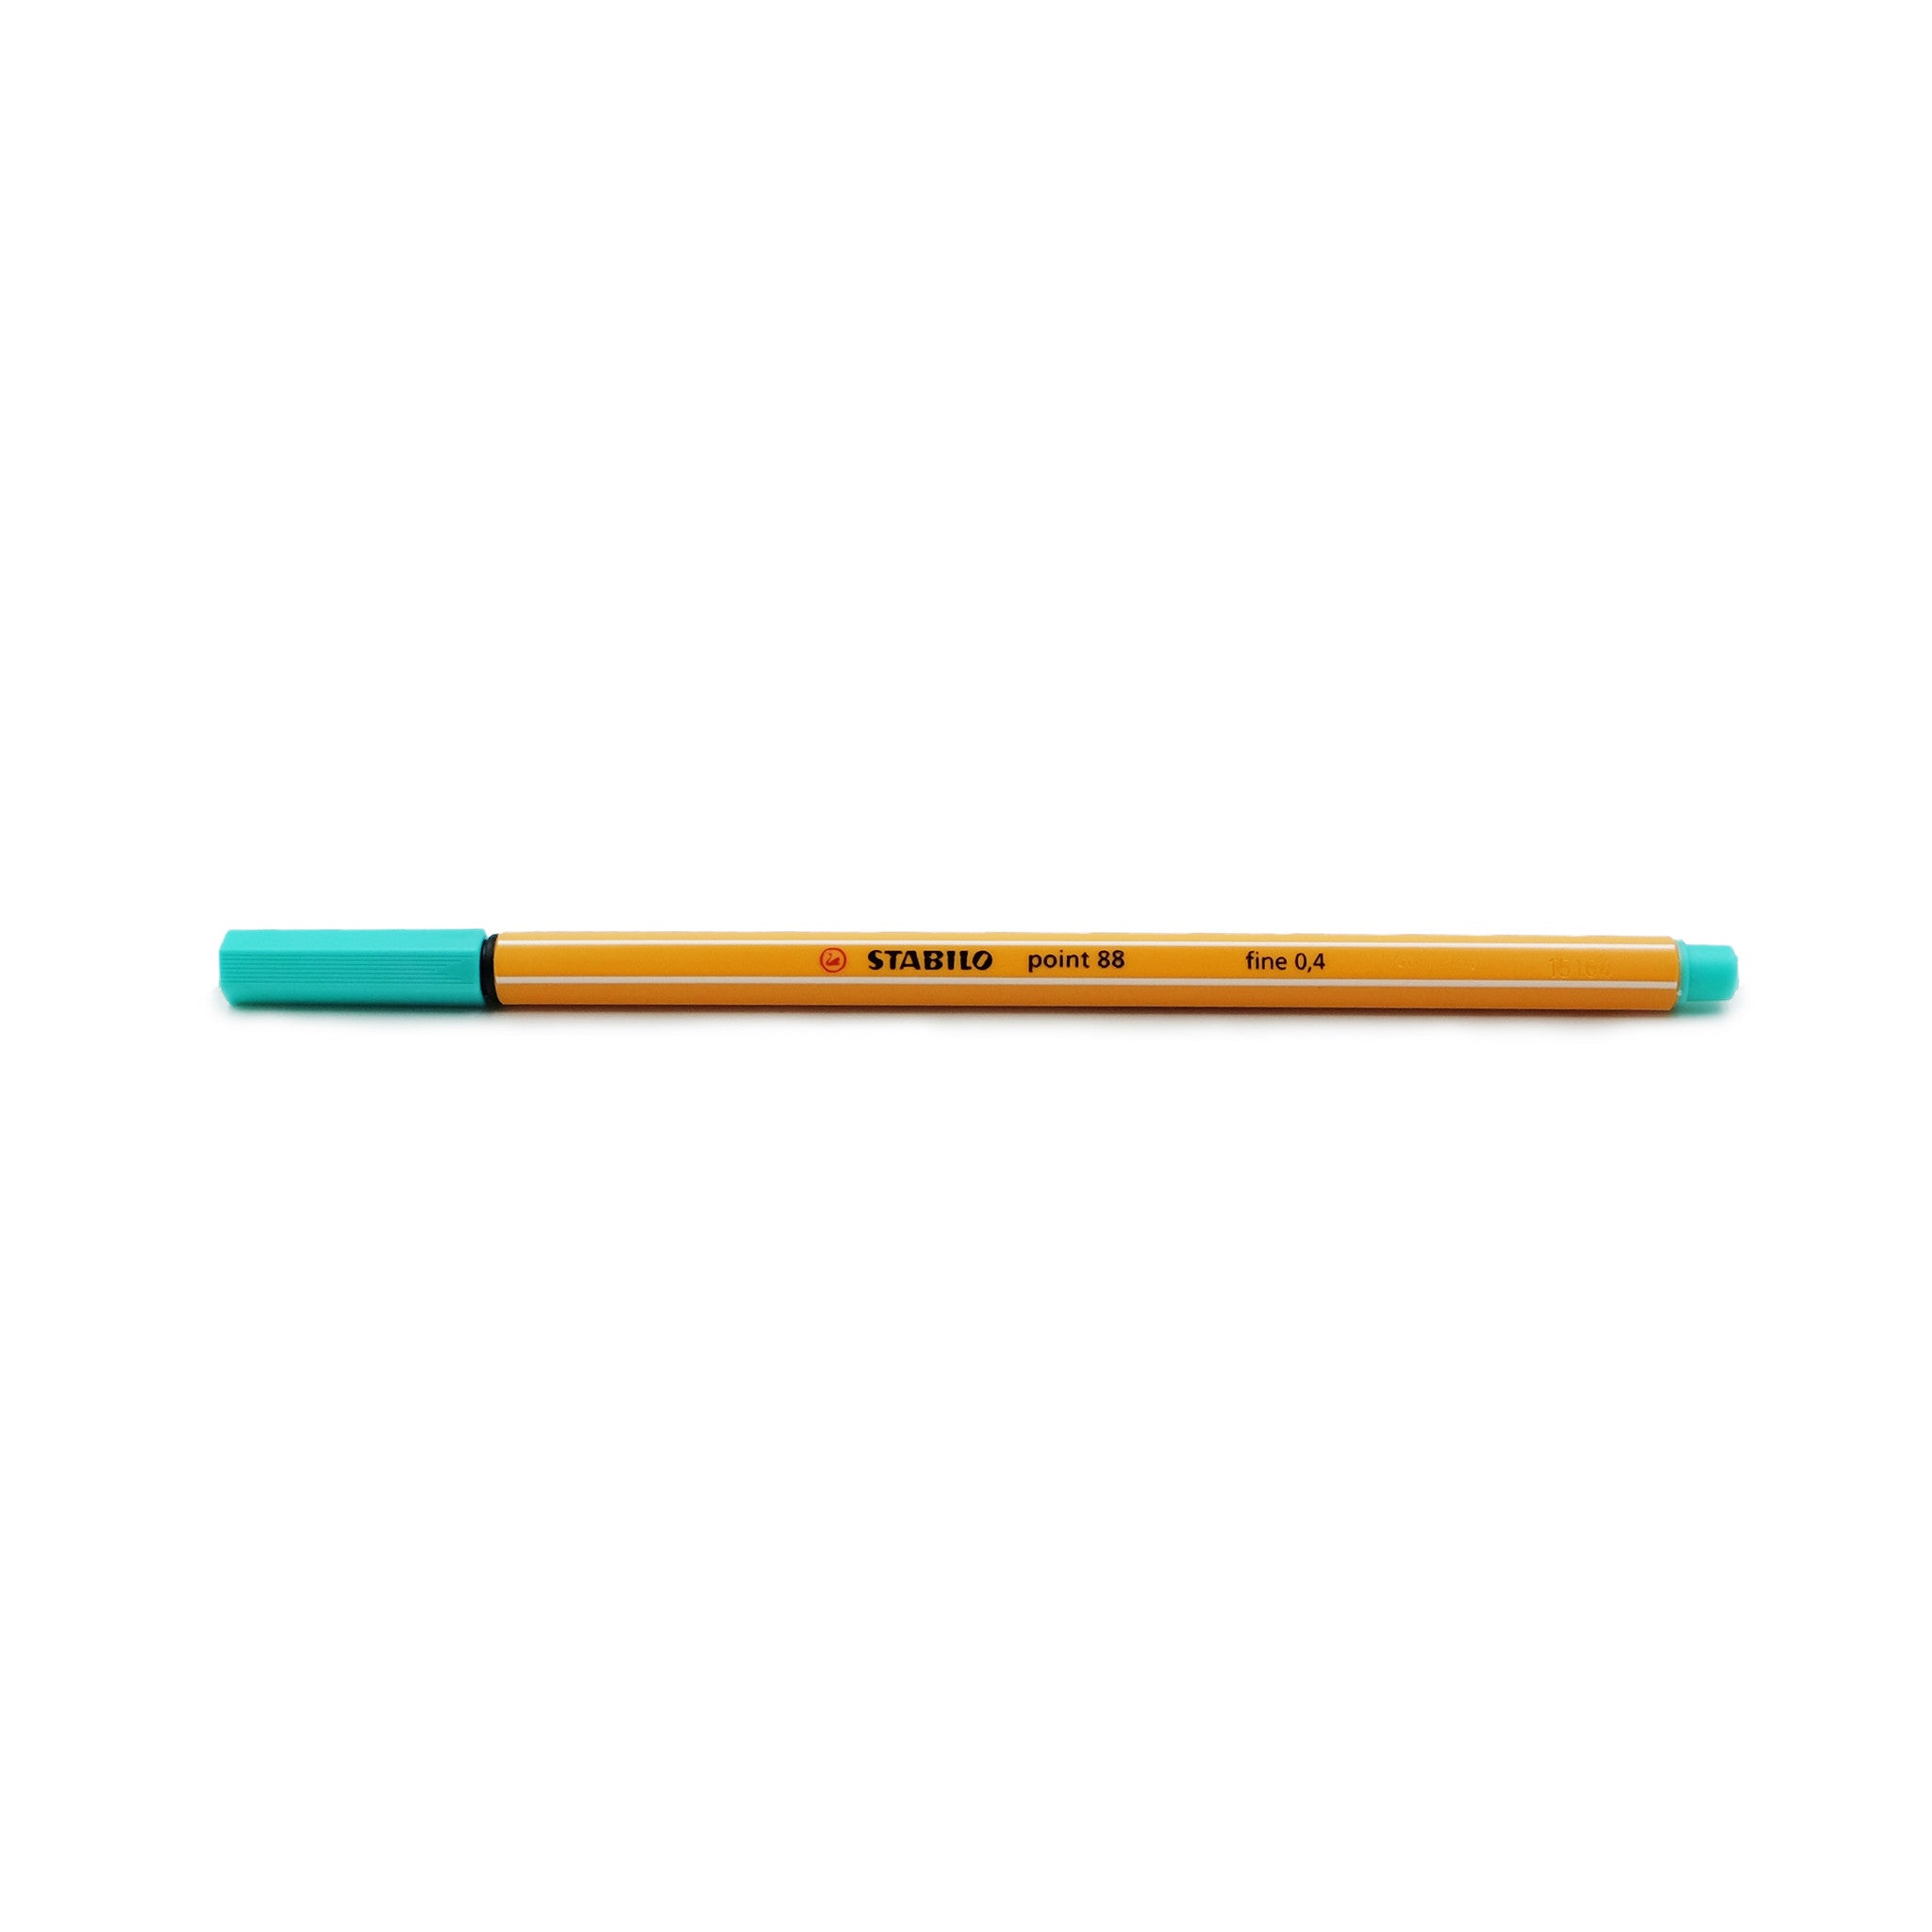 Stabilo Point 88 Fineliner Marker Pen - ArtSnacks